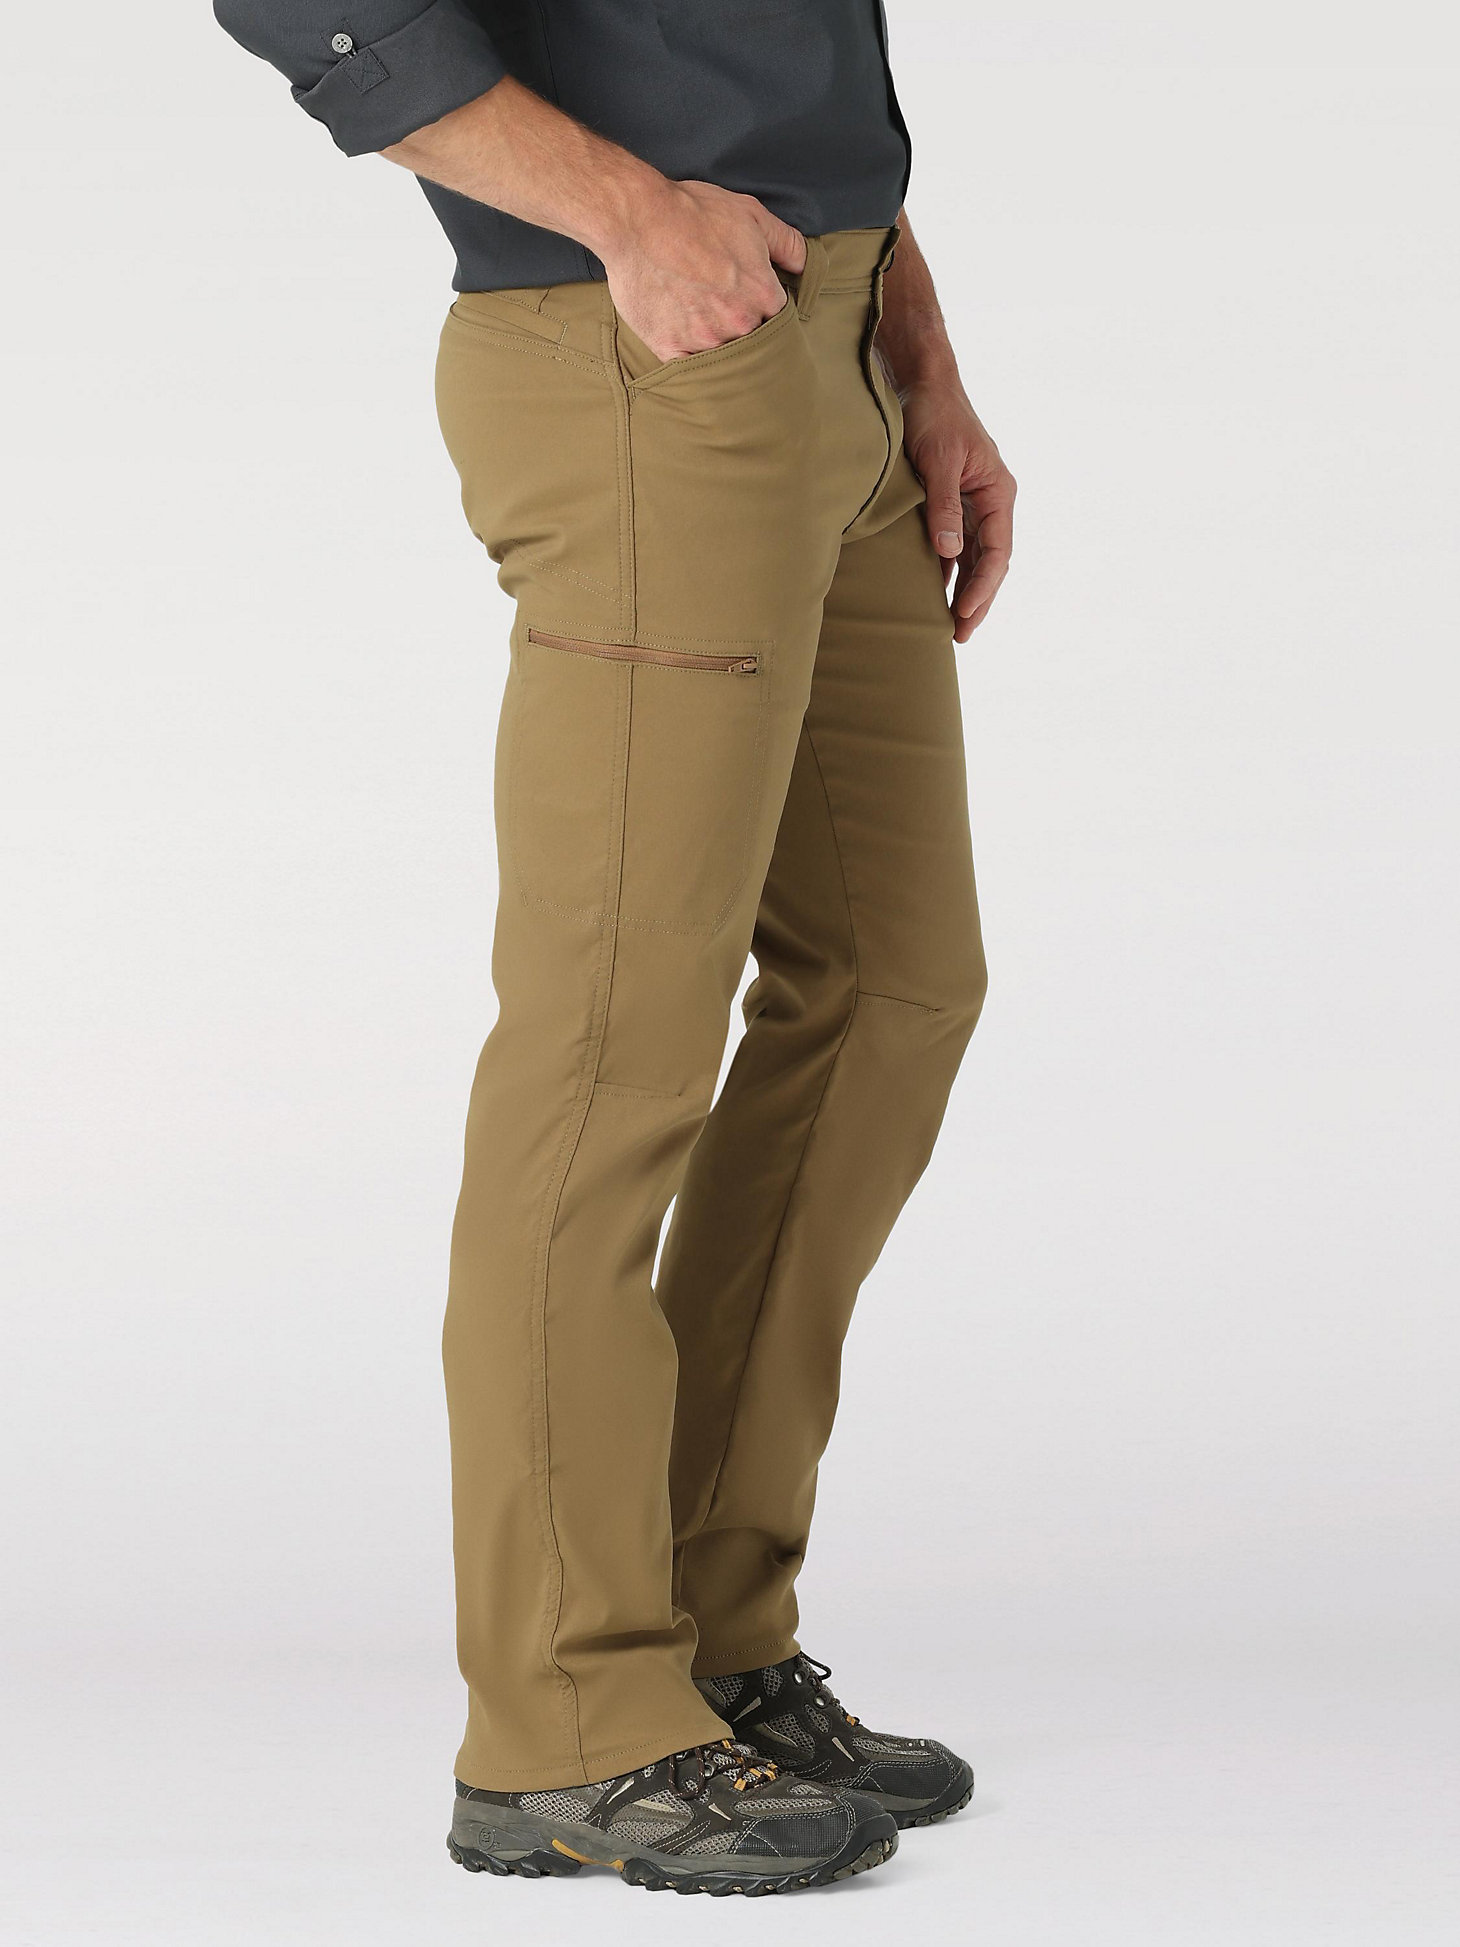 Men's Wrangler® Flex Waist Outdoor Cargo Pant in Kangaroo alternative view 5